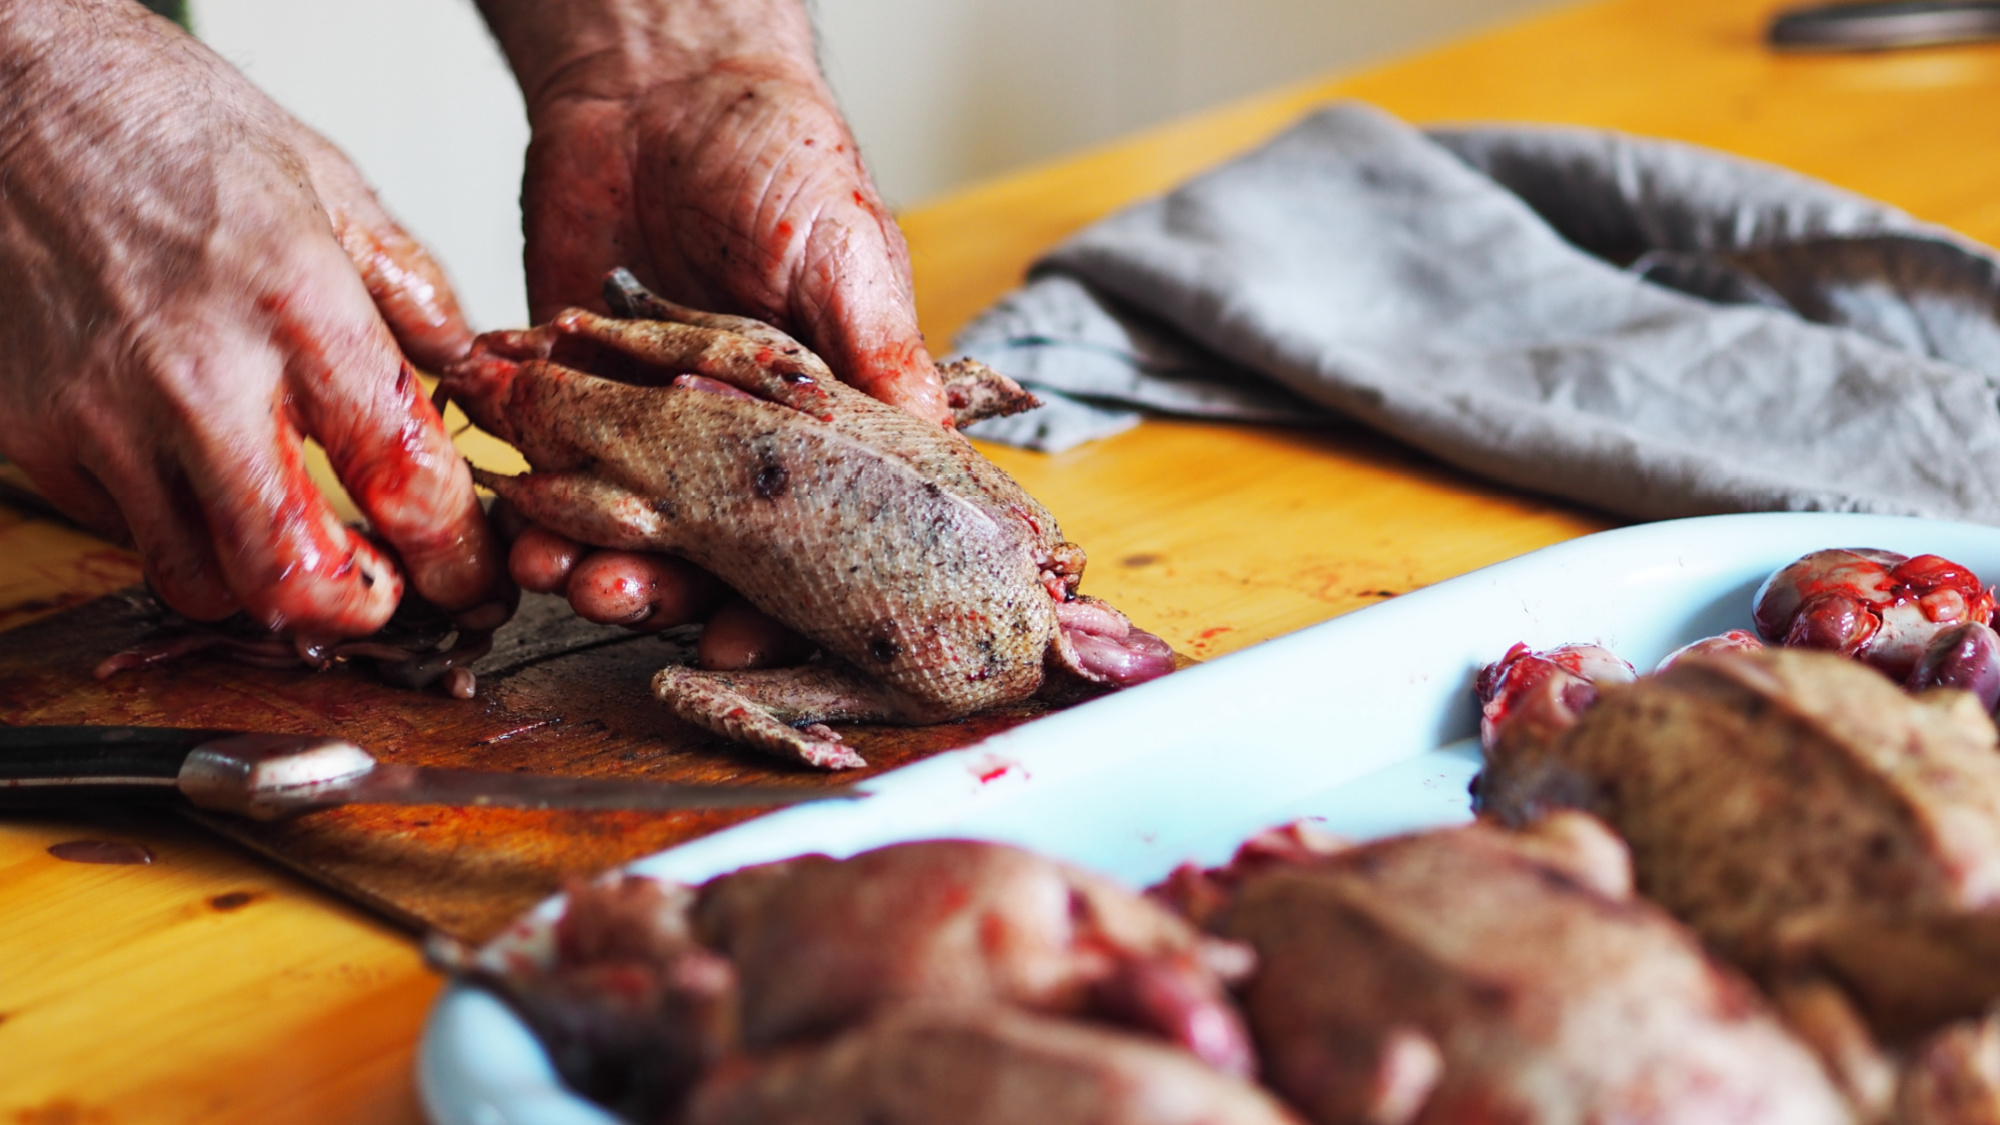 butchering wild ducks to cook